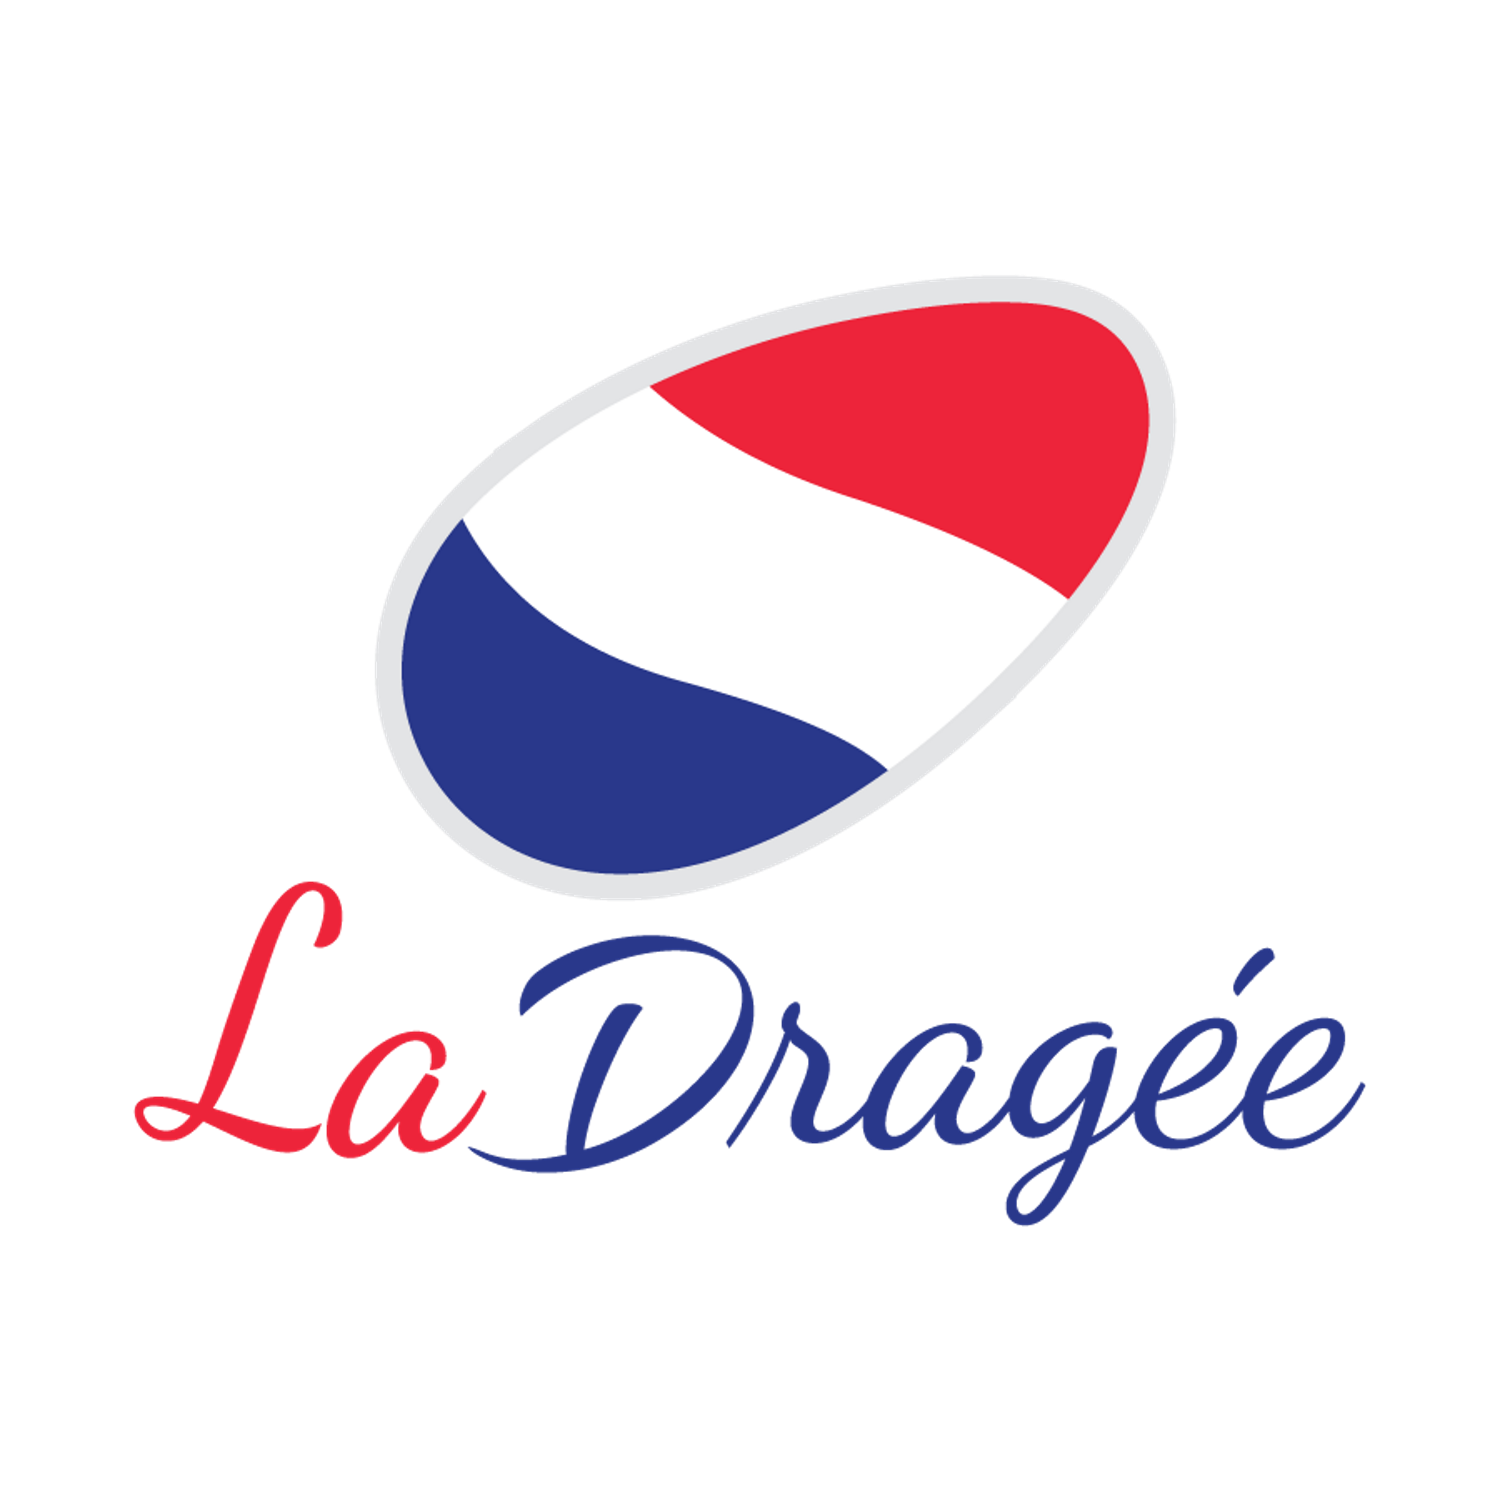 (c) La-dragee.de